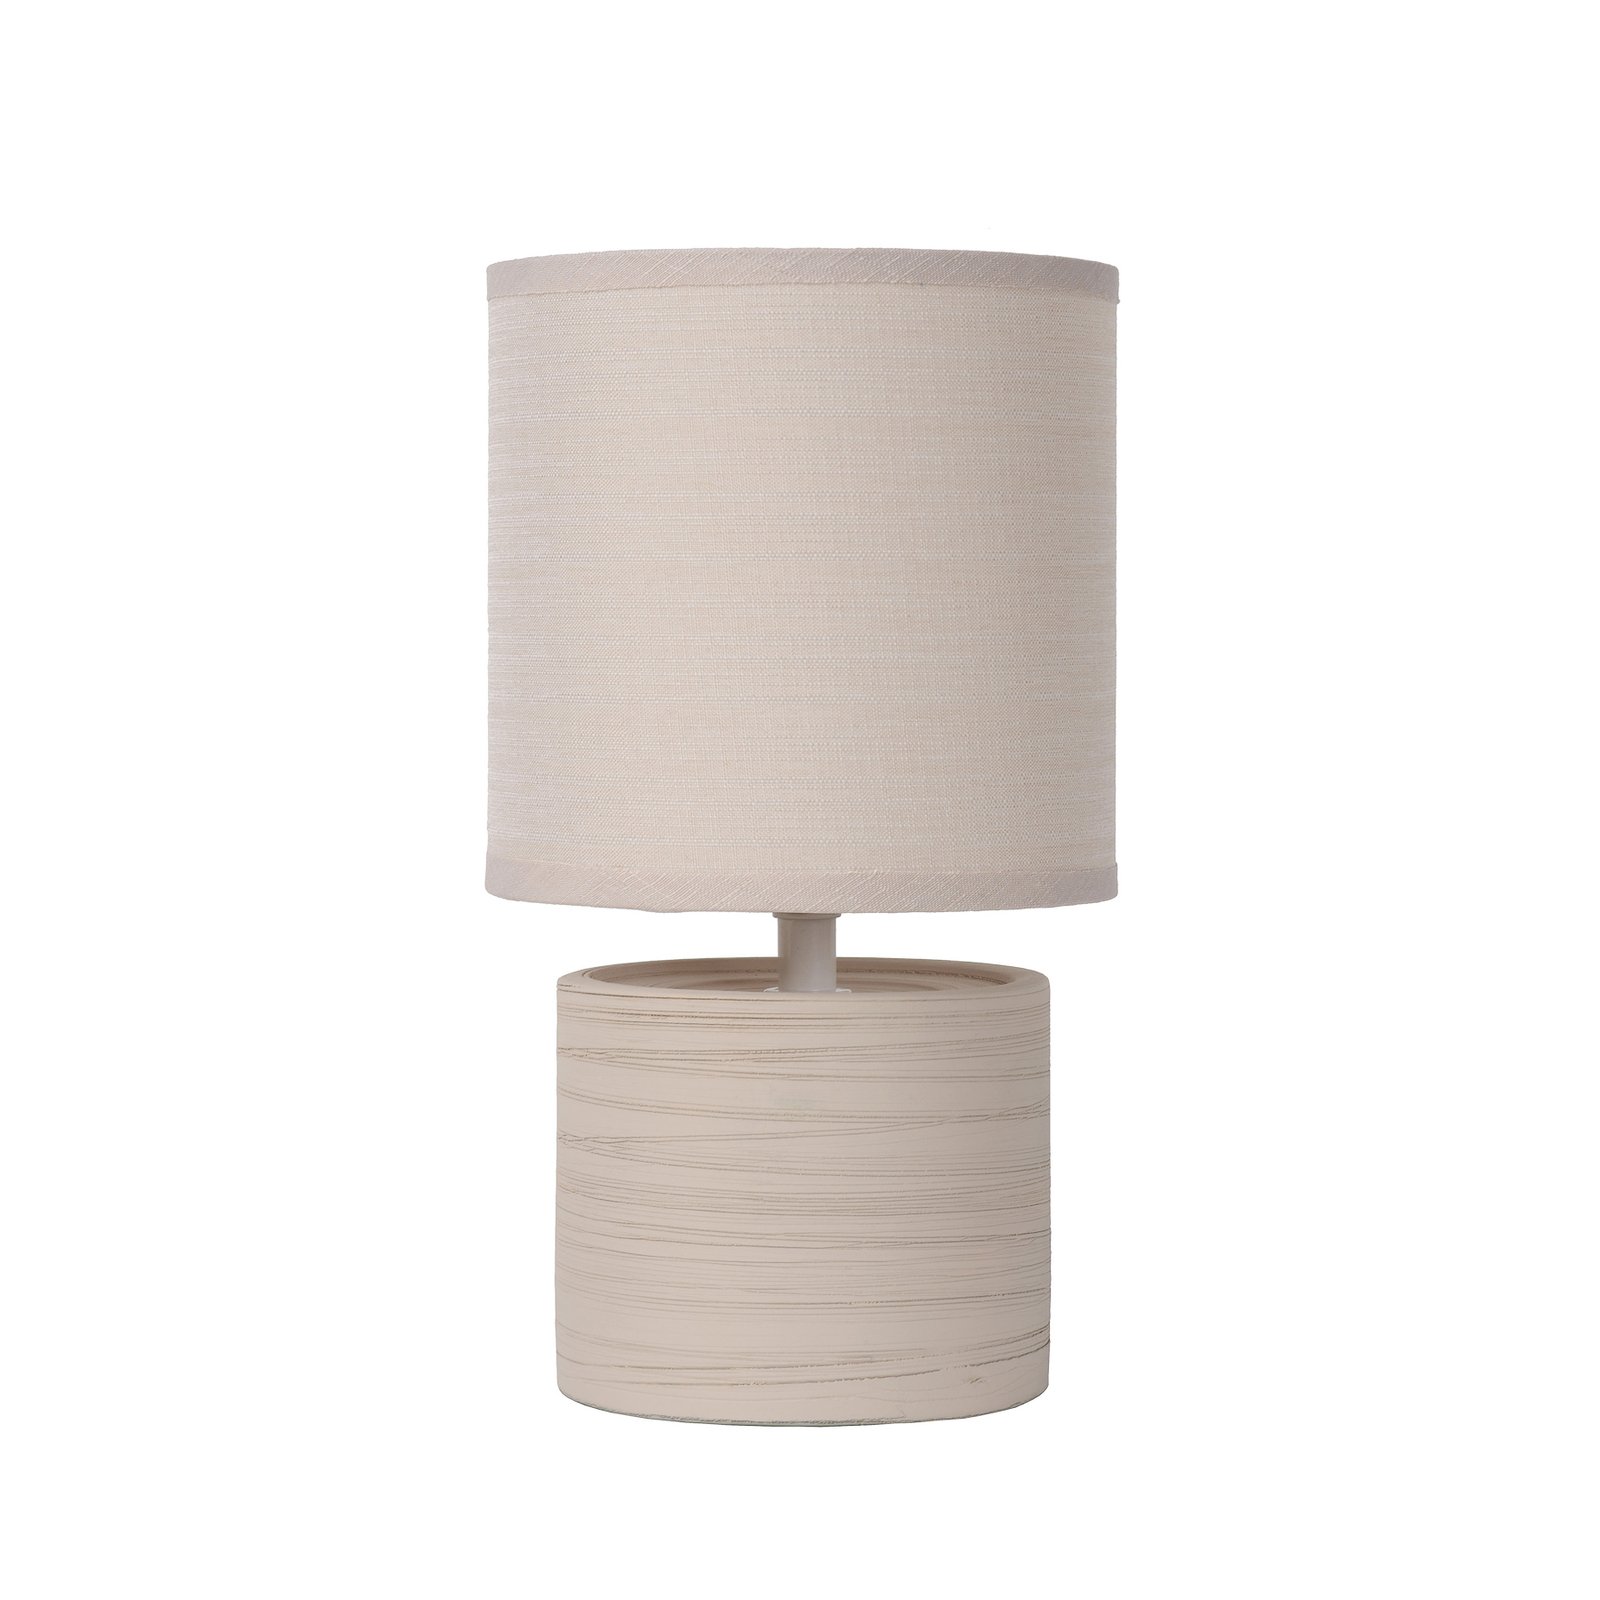 Настолна лампа Greasby с текстилен абажур, бежова